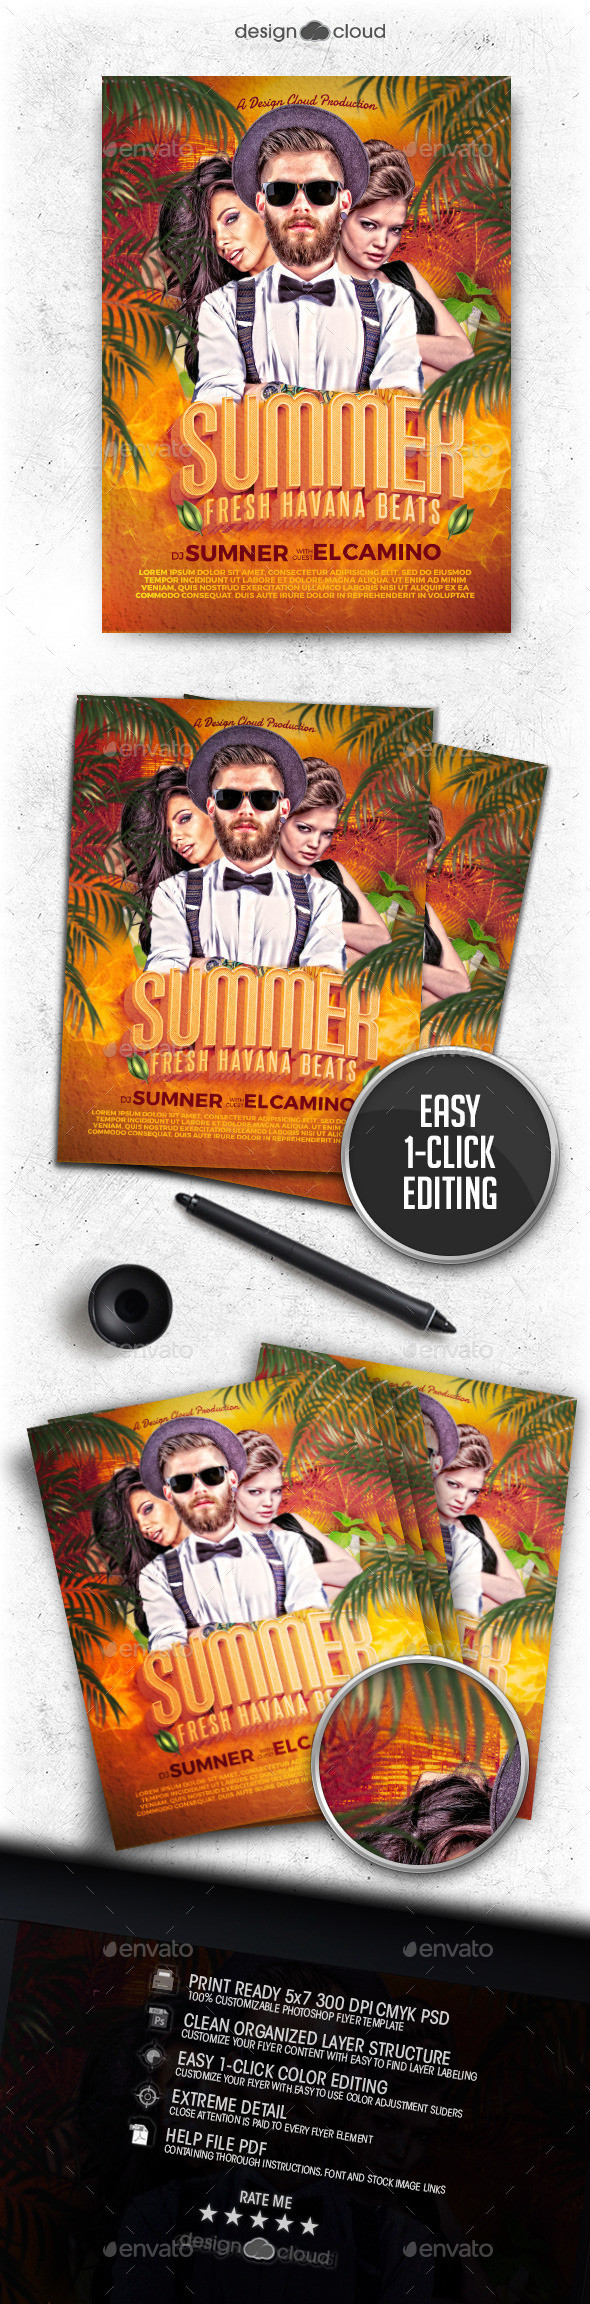 Preview summer dj fresh havana beats flyer template